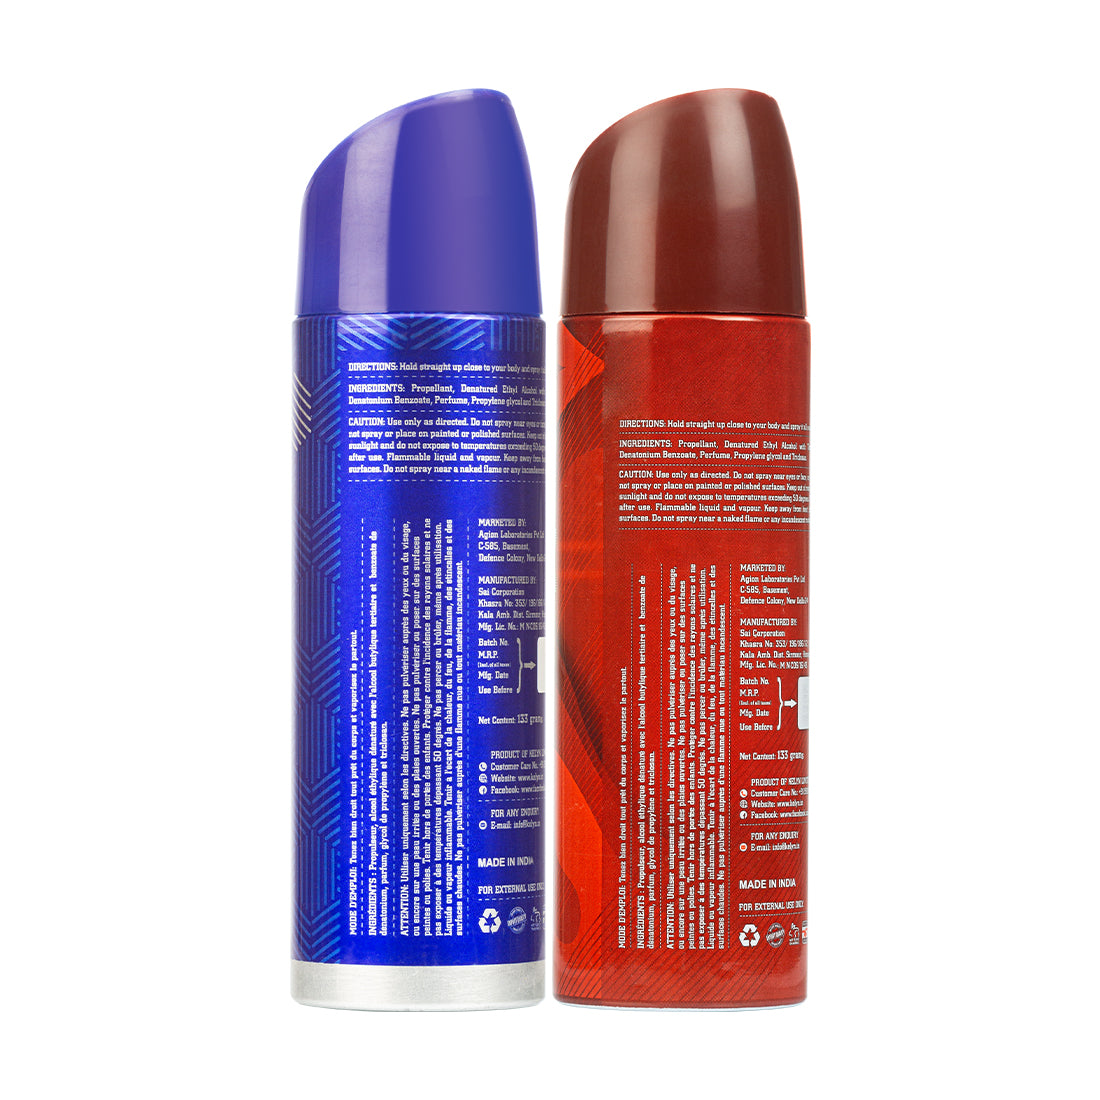 Groove, Dapper Deodorant for Men Body Spray (Pack of 2) 200 ml each